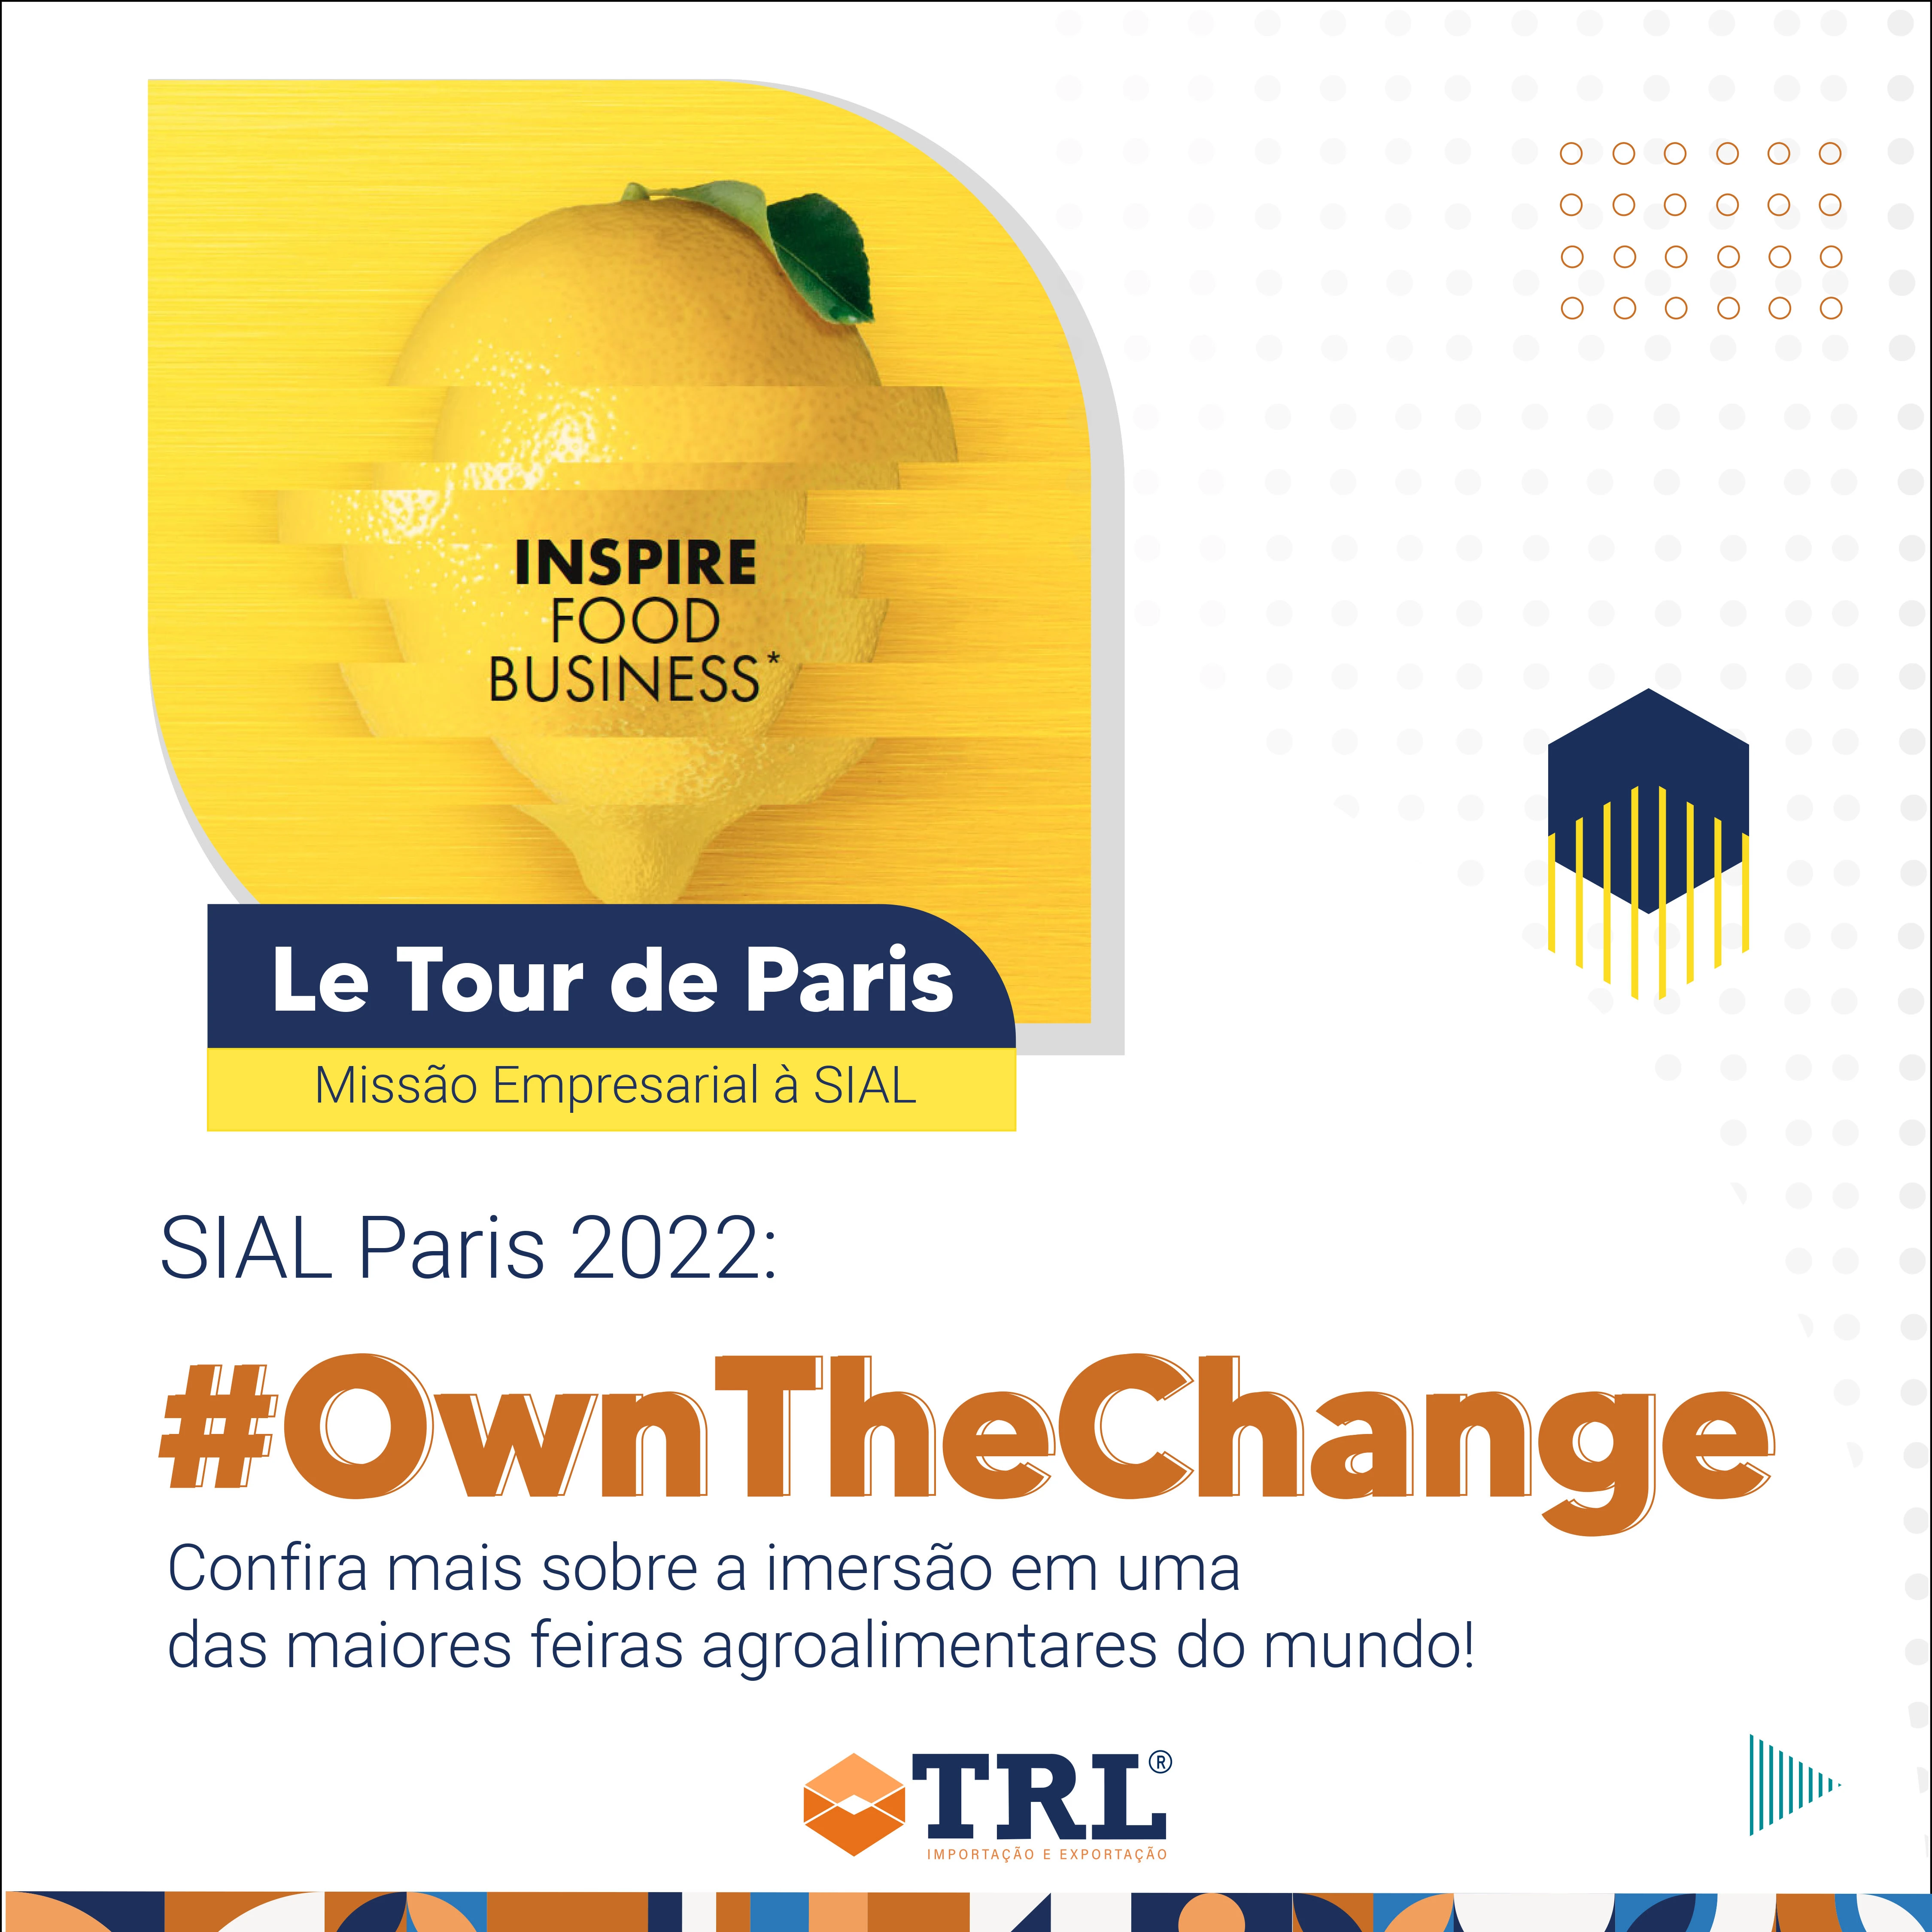 Sial Paris 2022 Own the change – Seja dono da mudança.